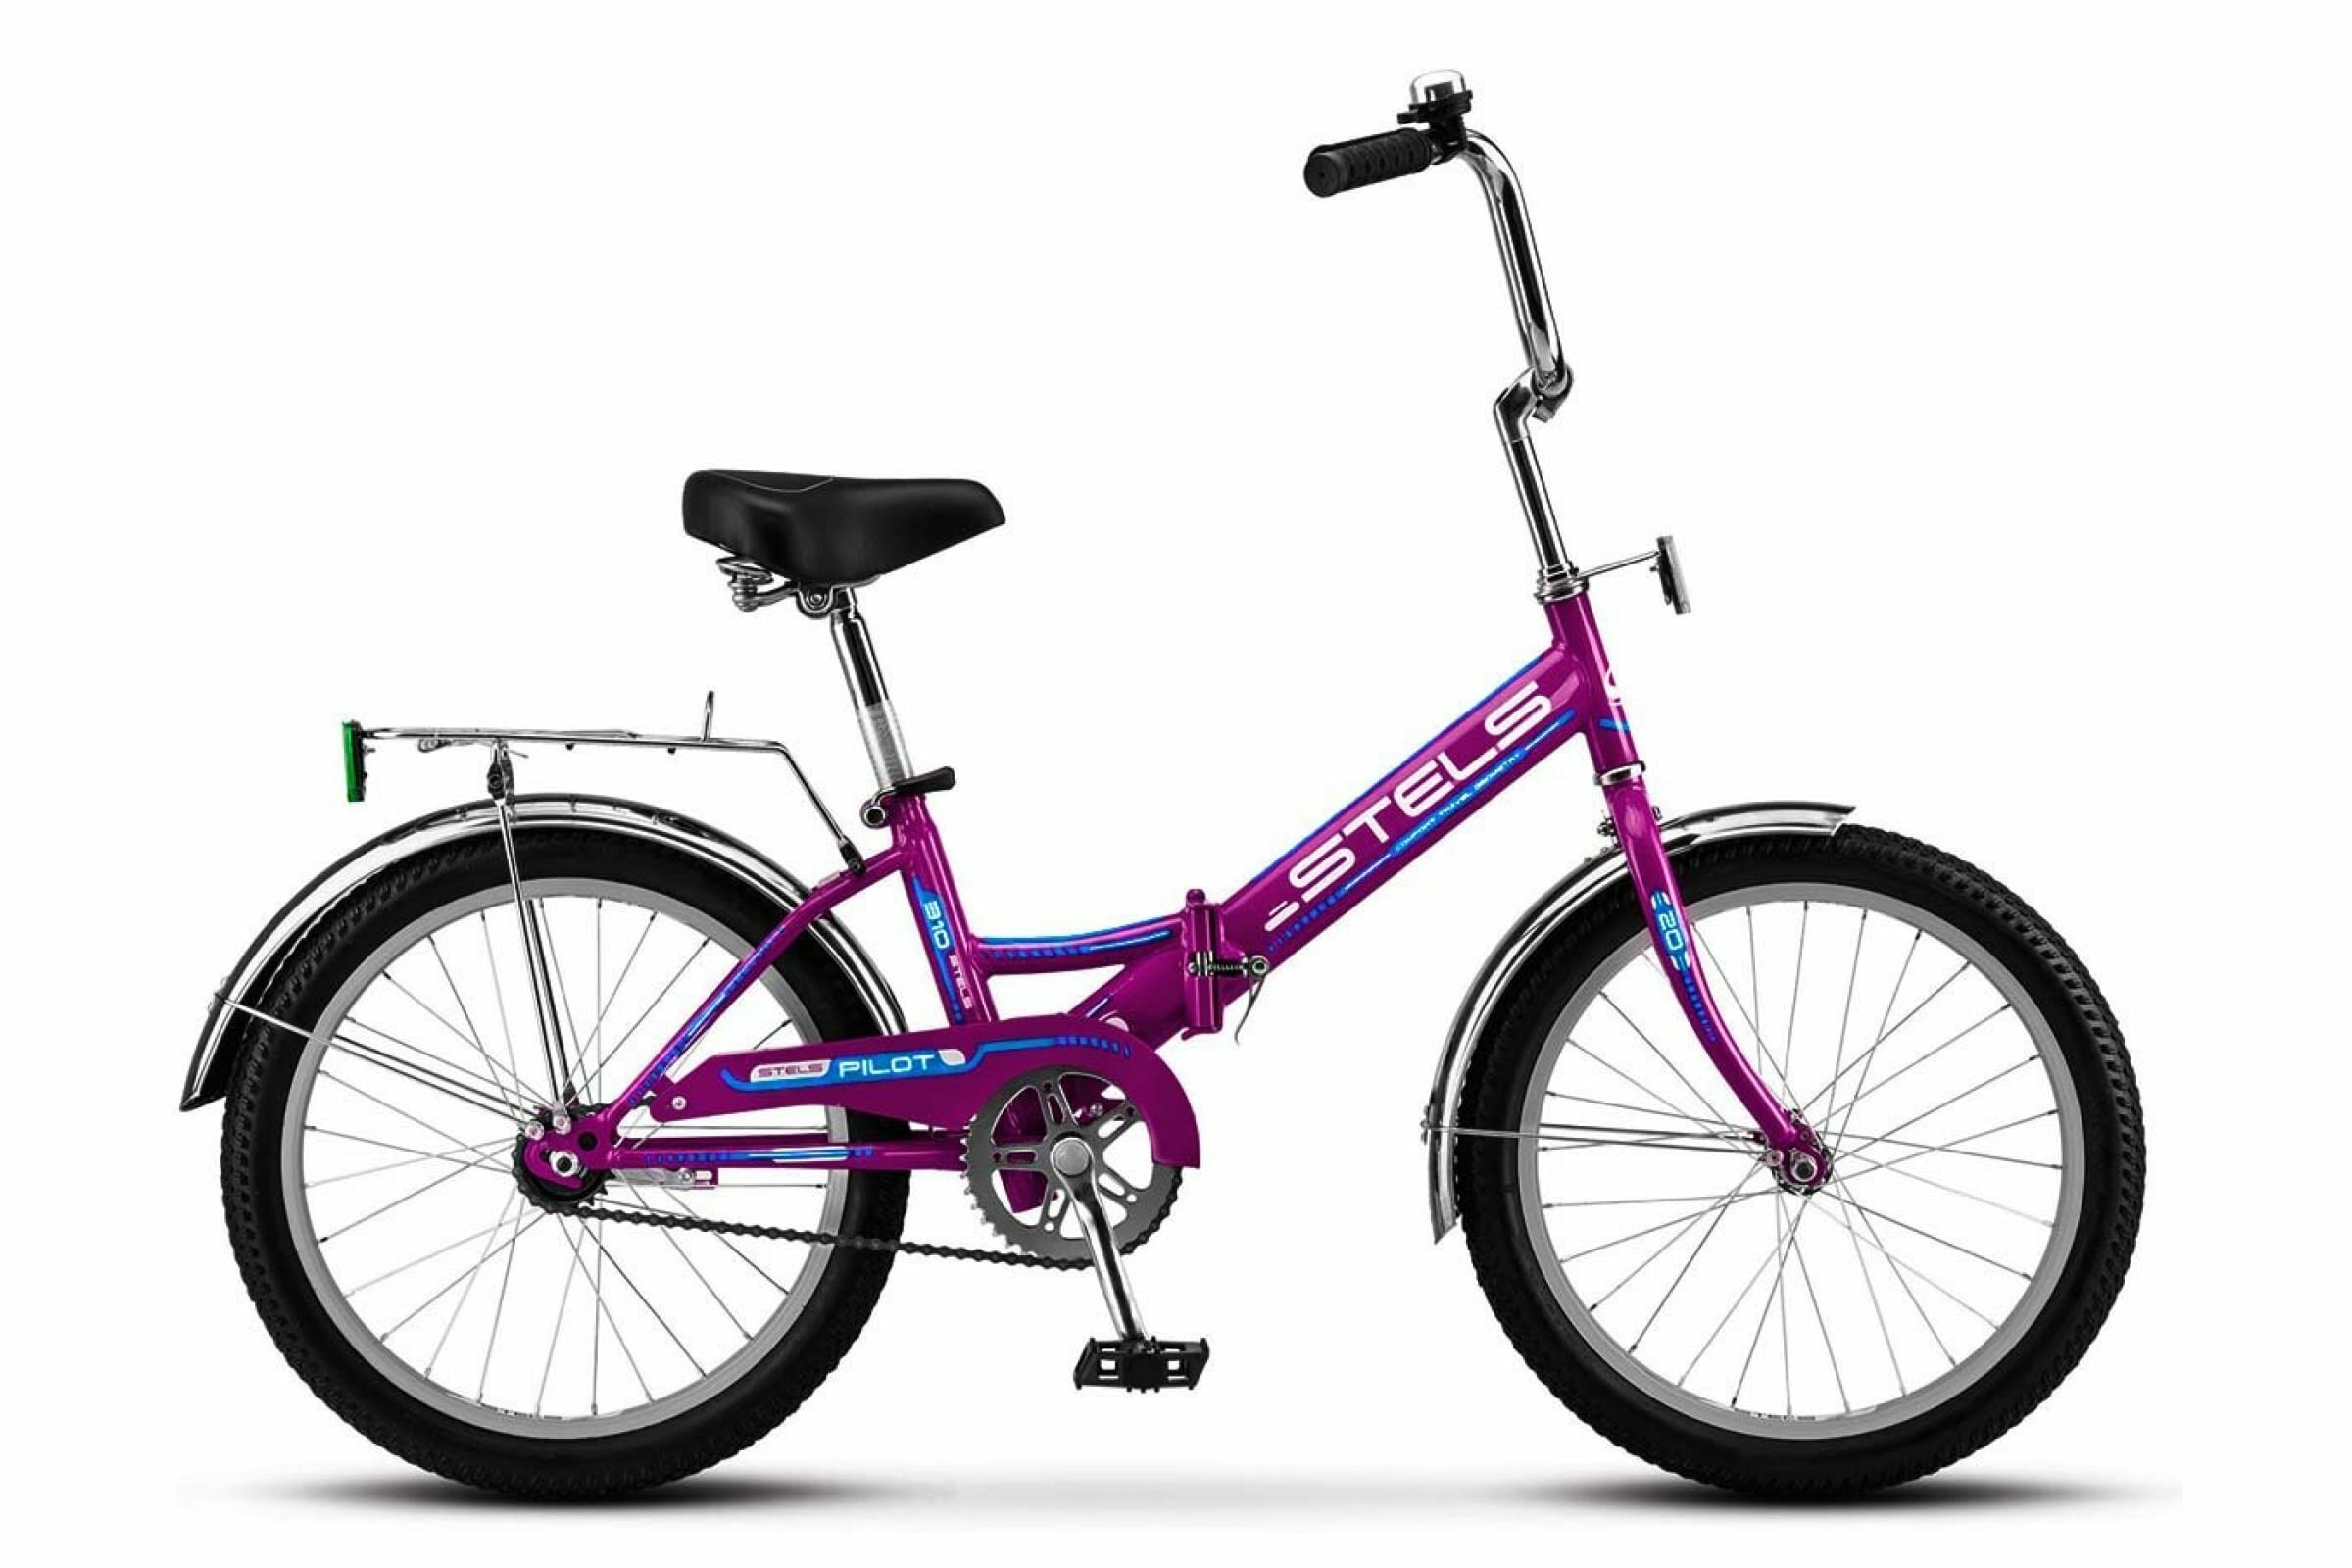 Городской велосипед STELS Pilot 310 20 (2017) рама 13" Фиолетовый/голубой